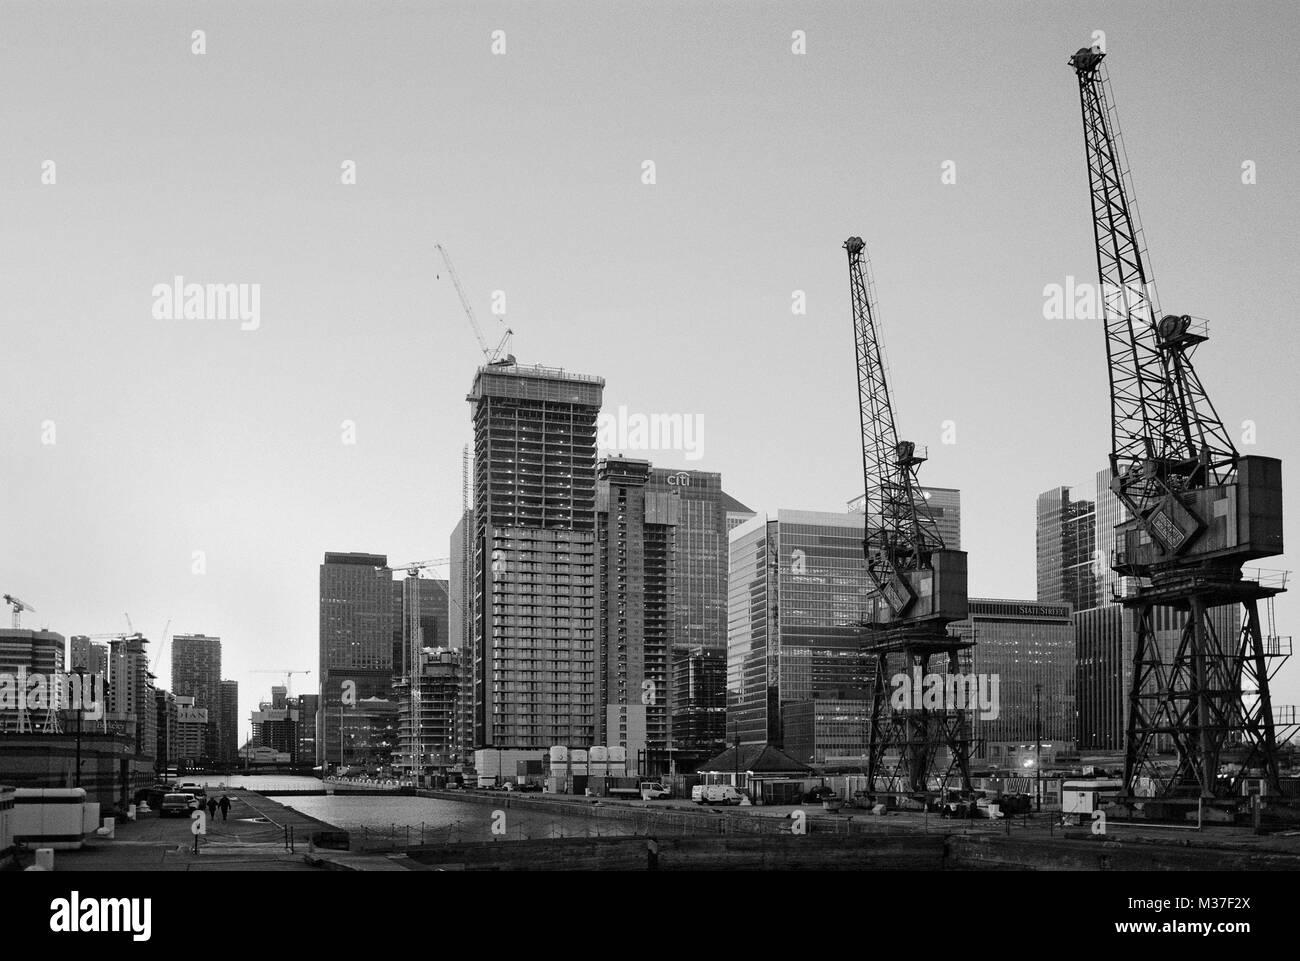 De nouveaux bâtiments en construction et de grues à quai sud, Canary Wharf, l'Est de Londres, Royaume-Uni Banque D'Images